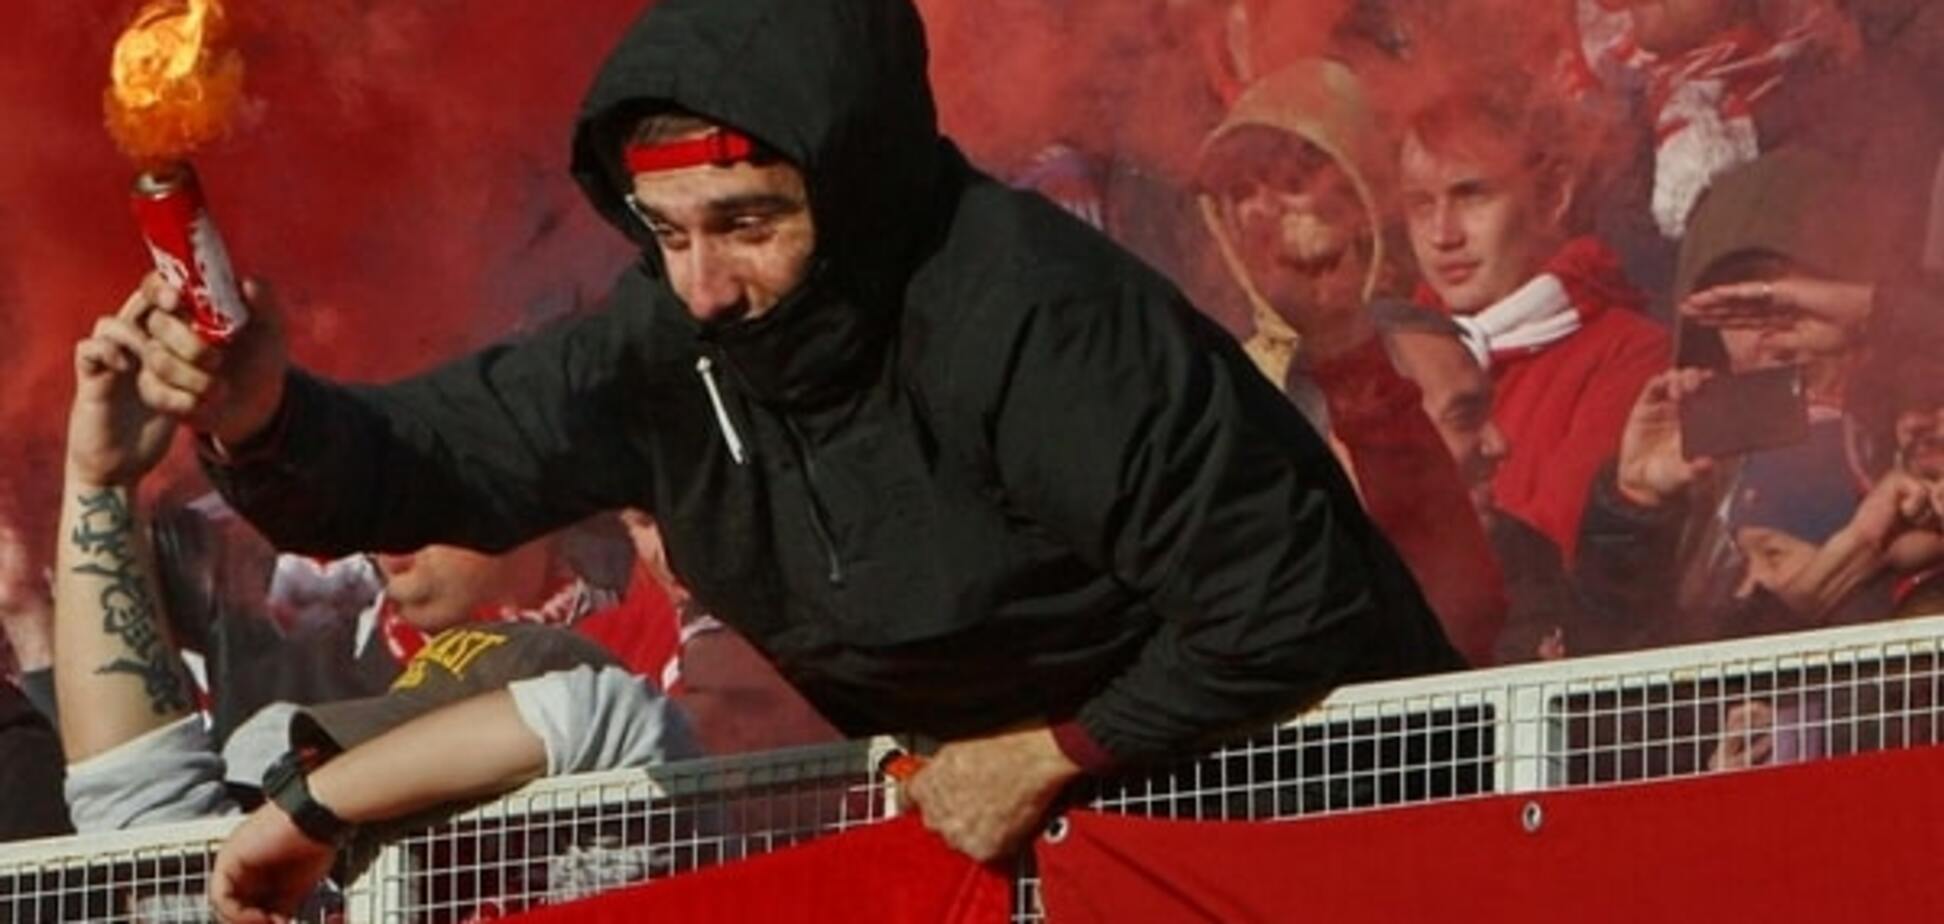 На стадион любыми способами: российский болельщик пытался пронести фаер в своем анусе